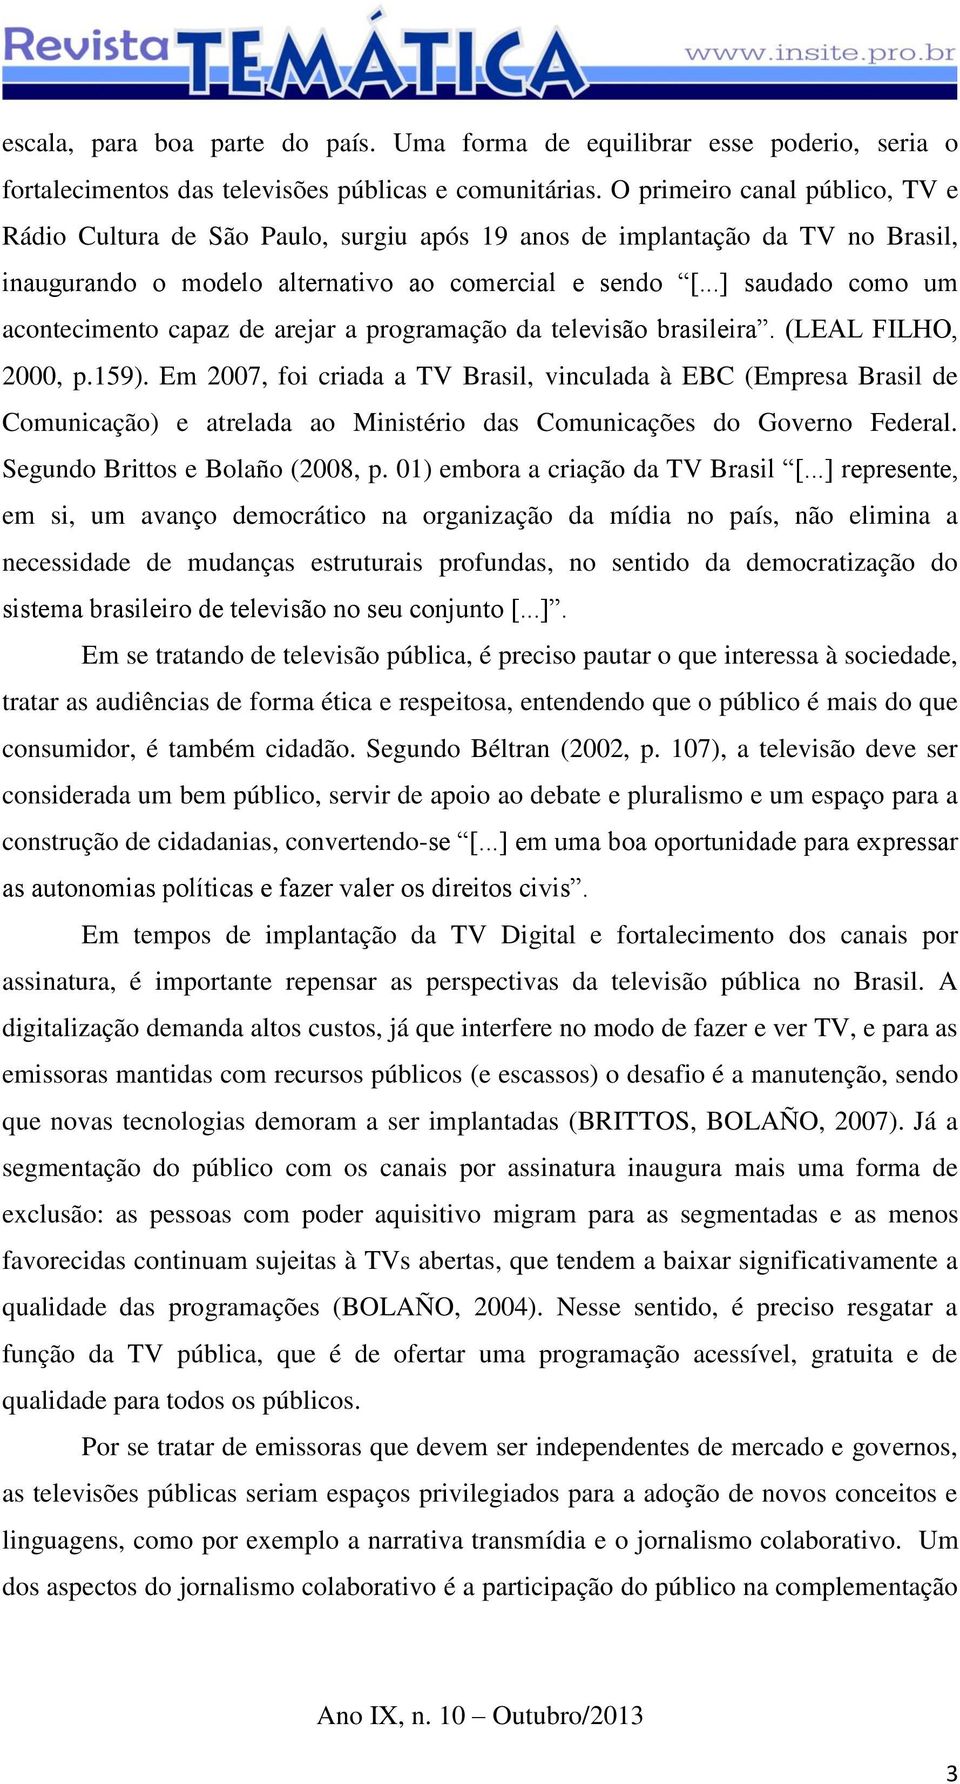 ..] saudado como um acontecimento capaz de arejar a programação da televisão brasileira. (LEAL FILHO, 2000, p.159).